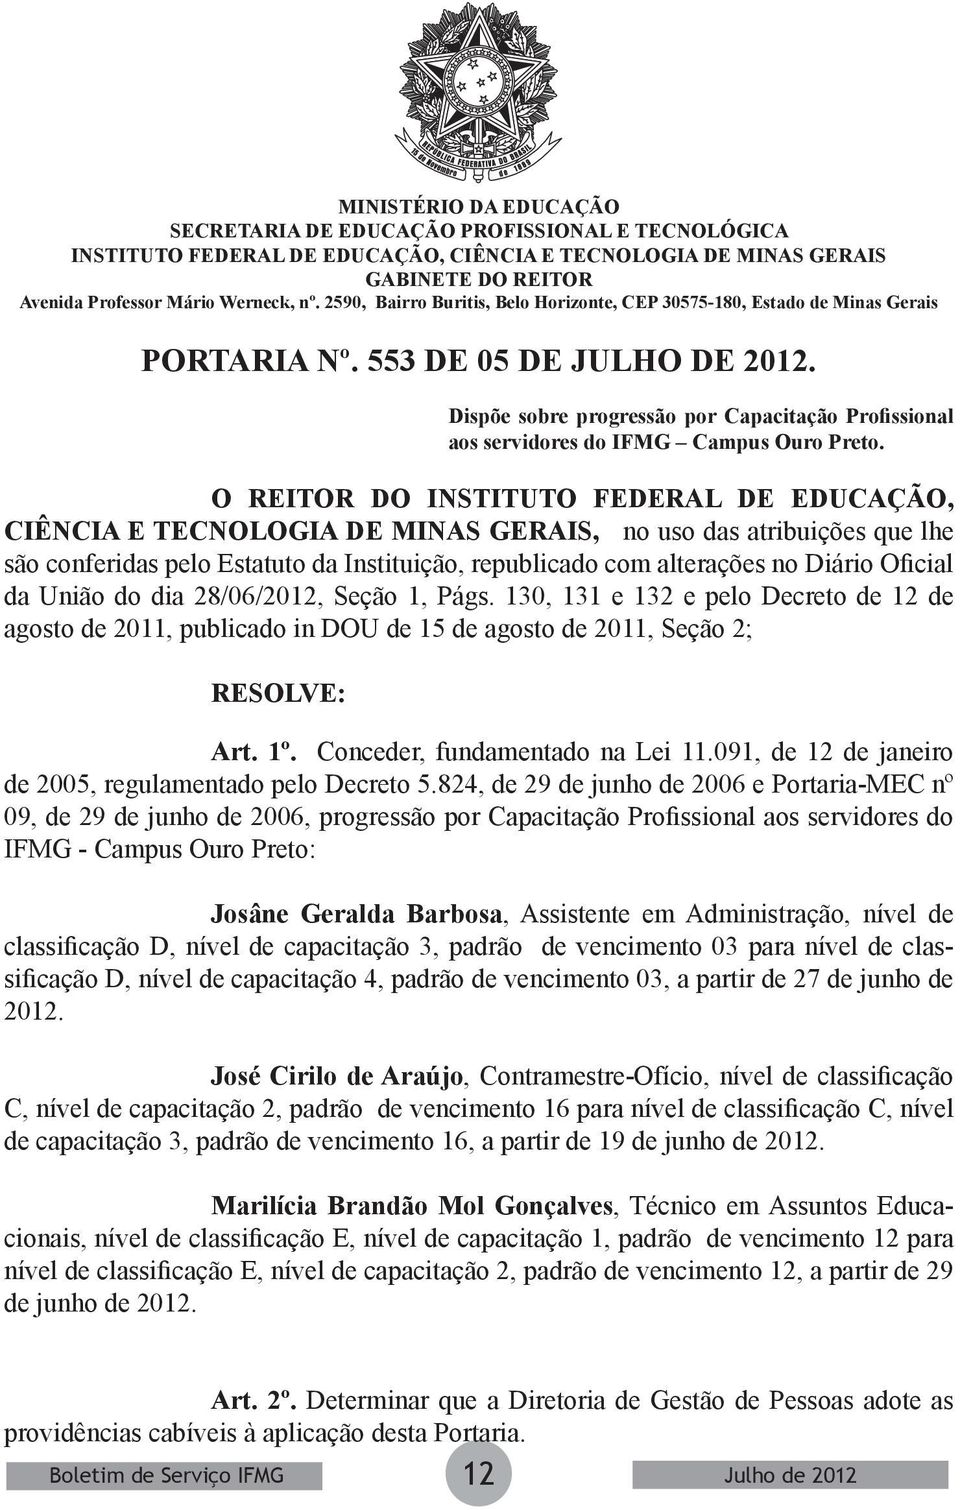 824, de 29 de junho de 2006 e Portaria-MEC nº 09, de 29 de junho de 2006, progressão por Capacitação Profissional aos servidores do IFMG - Campus Ouro Preto: Josâne Geralda Barbosa, Assistente em